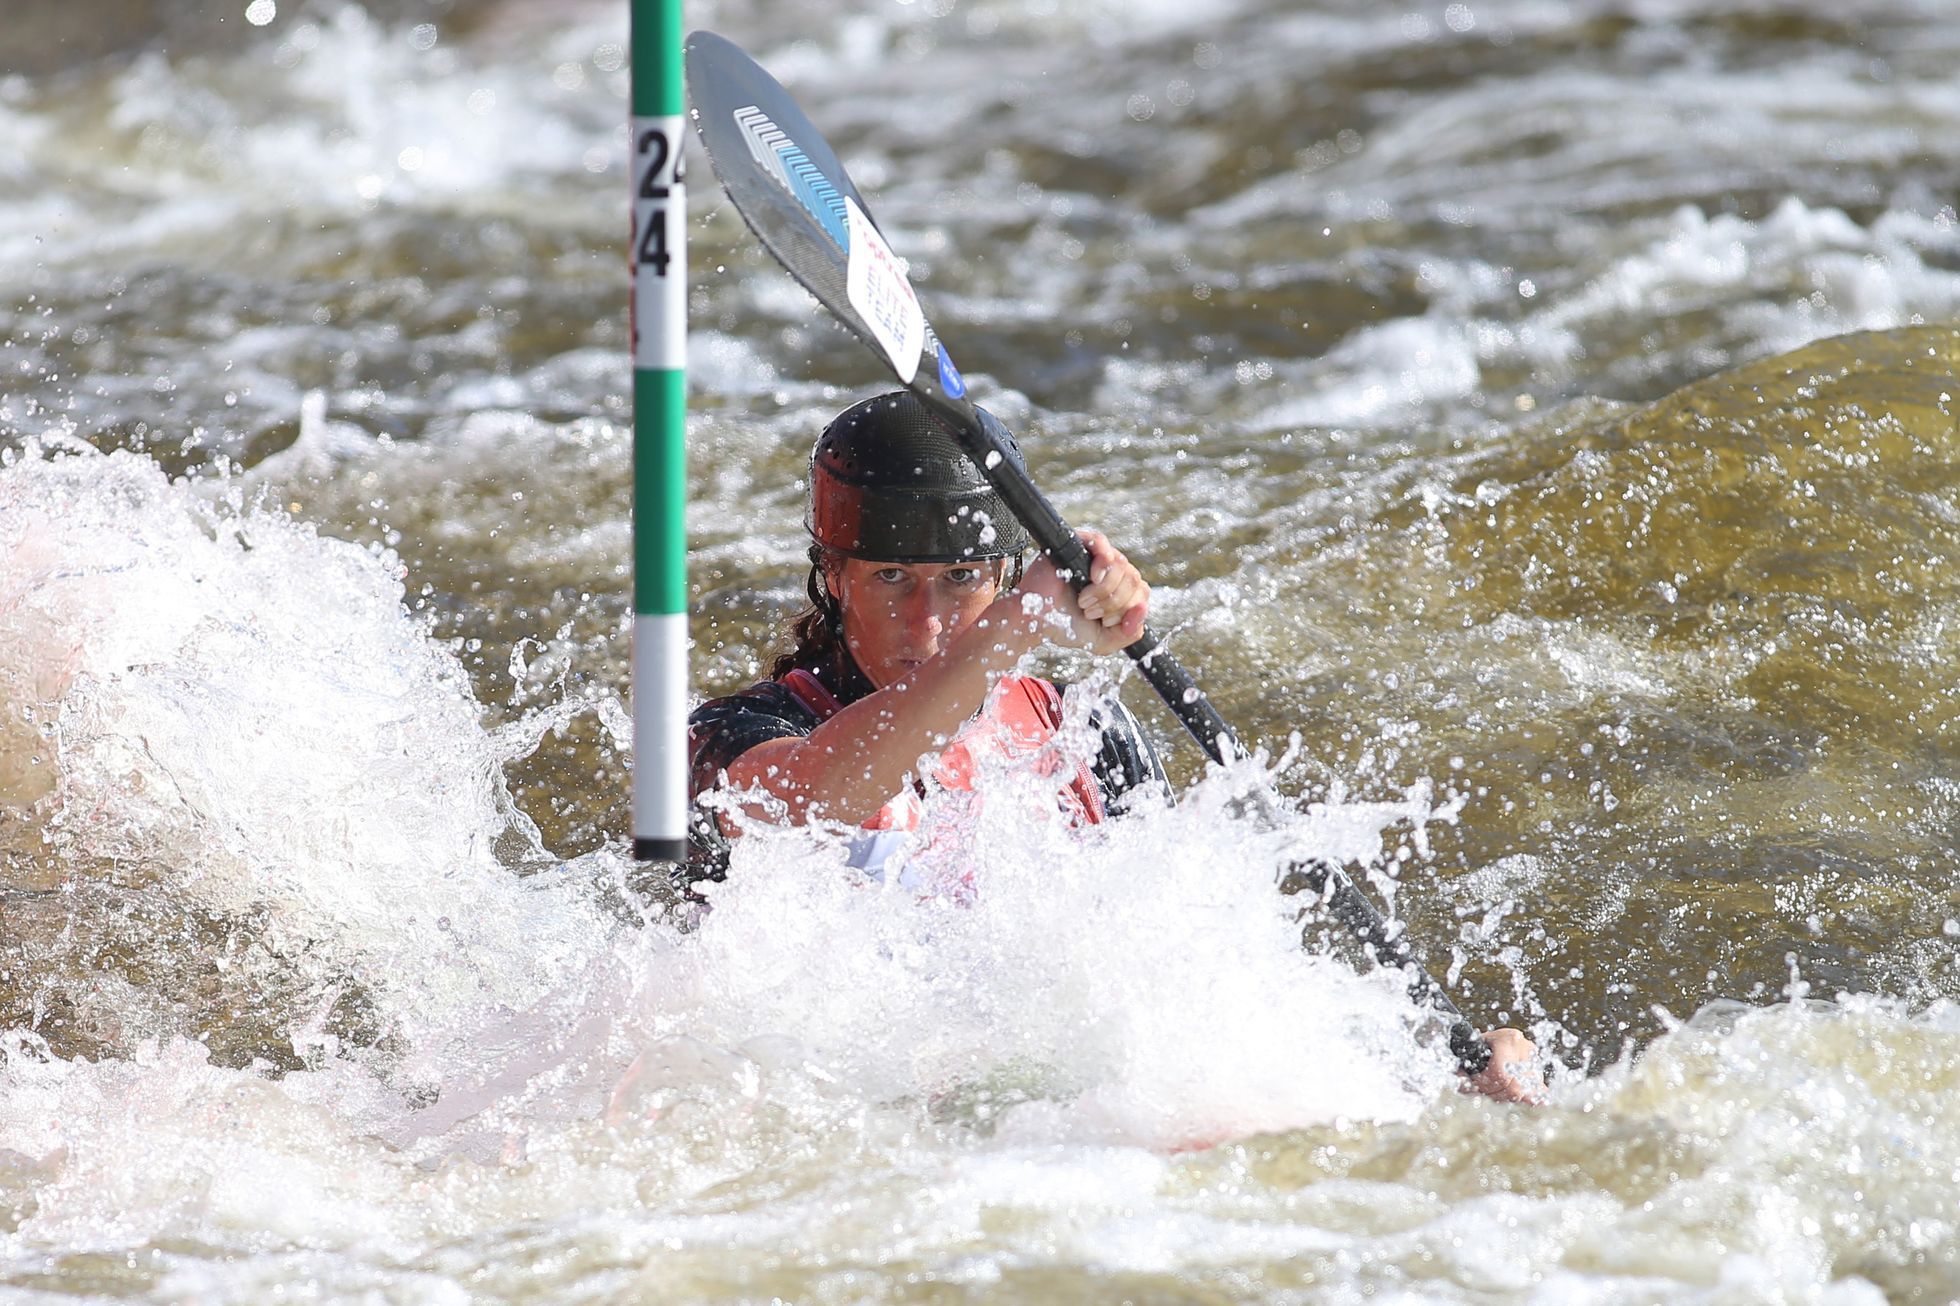 ME ve vodním slalomu 2020 v Praze: Kajakářka Kateřina Kudějová, mistryně Evropy